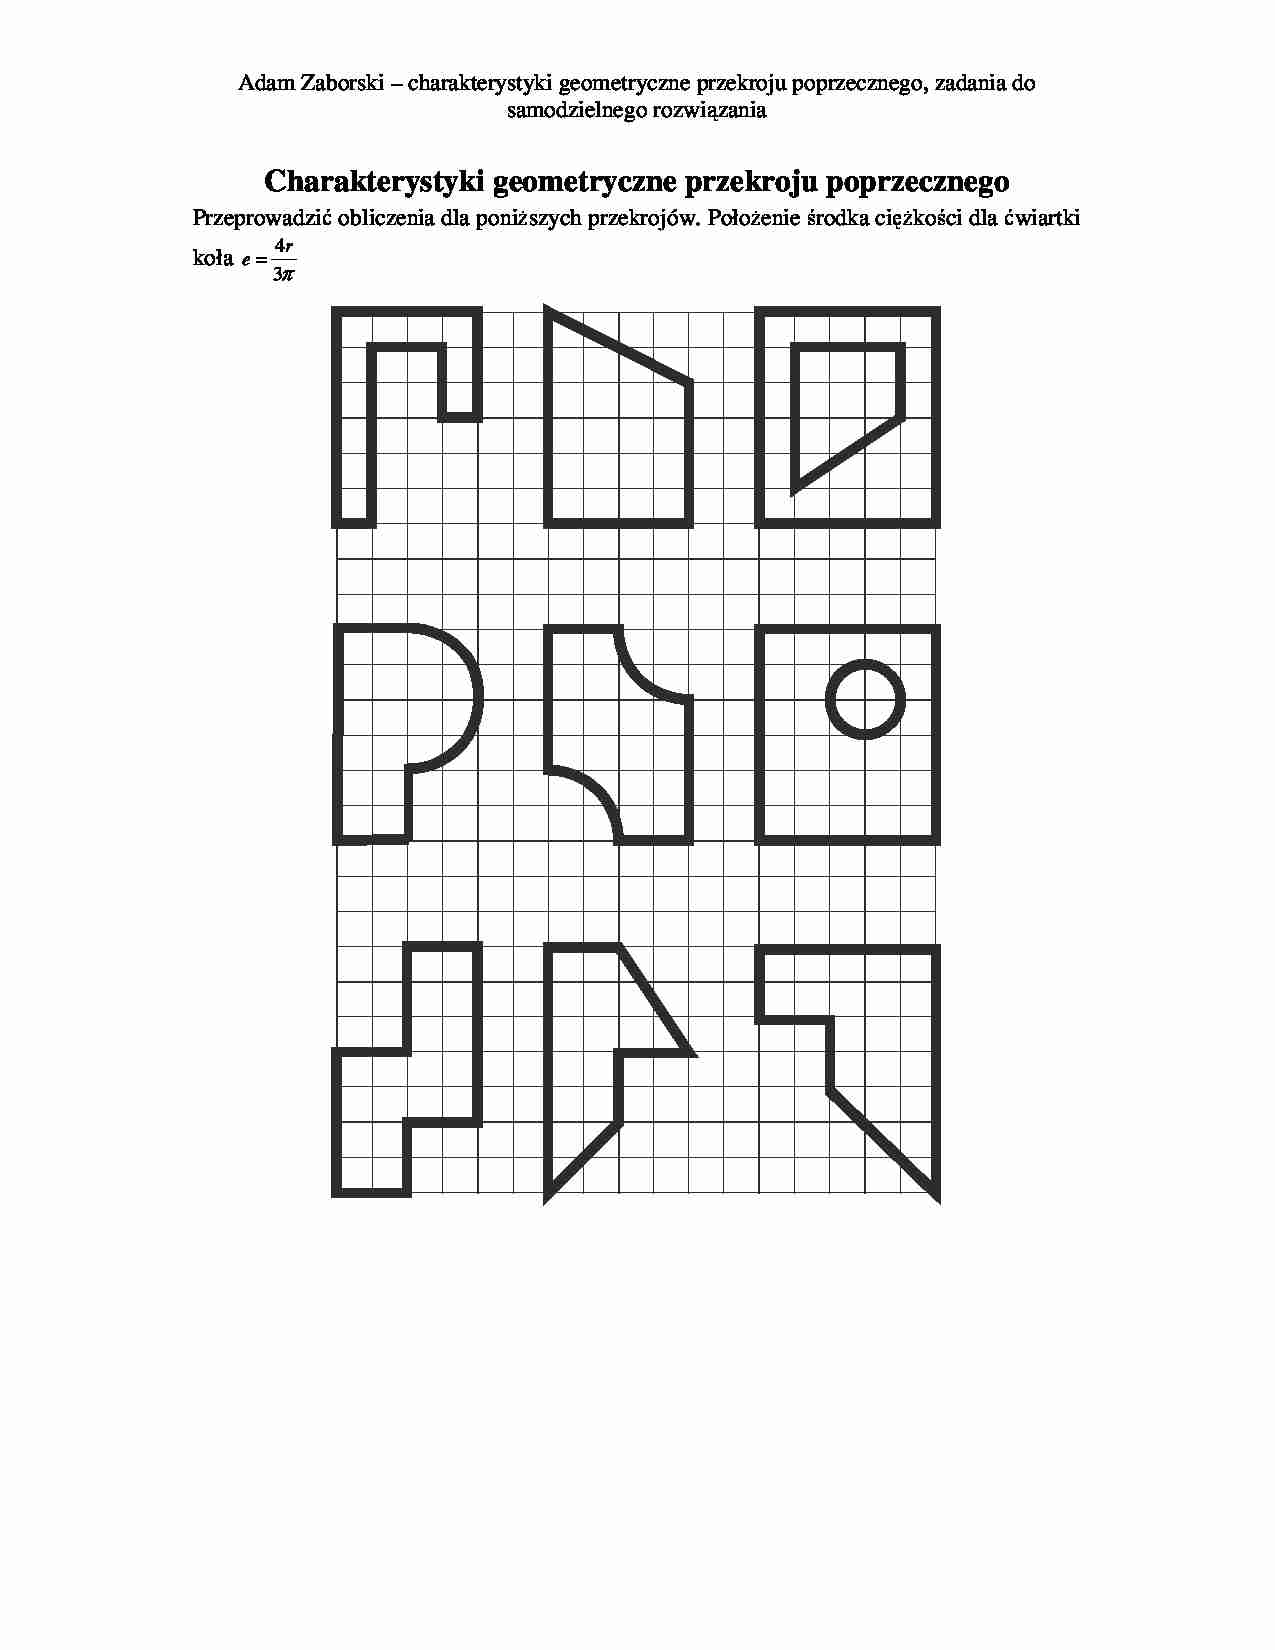 Charakterystyki geometryczne przekroju poprzecznego - strona 1